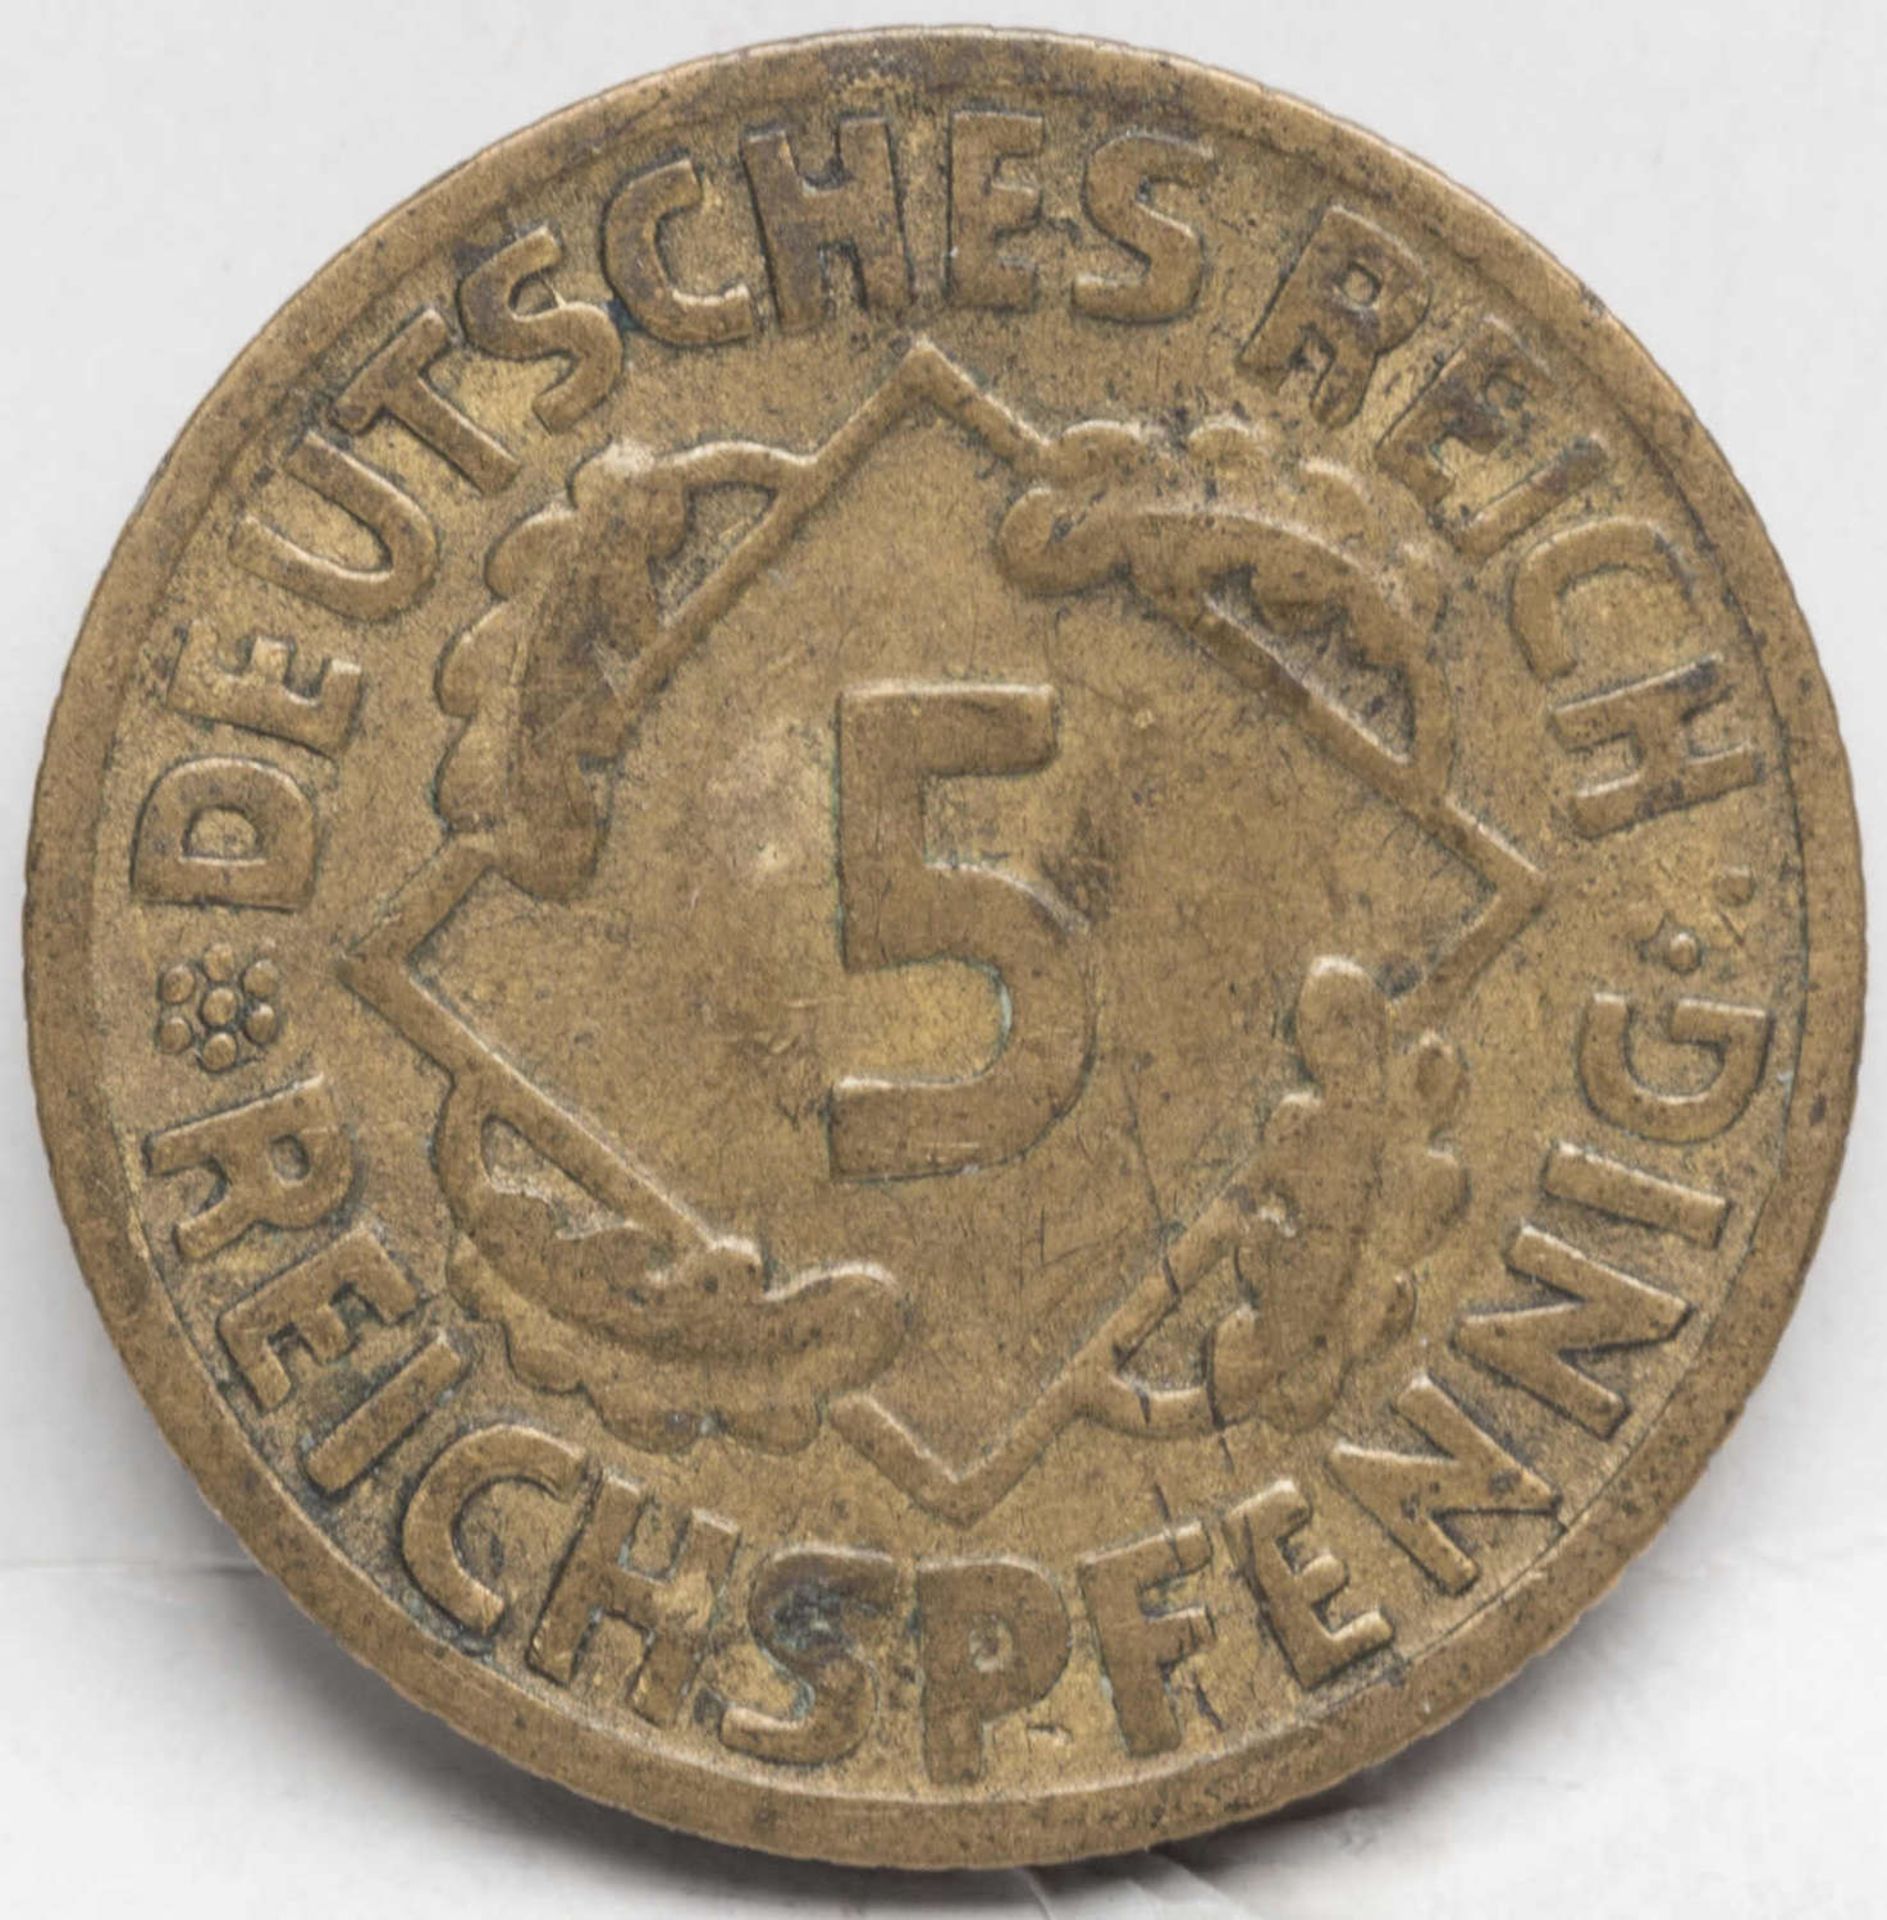 Deutsches Reich 1926 F, 5 Pfennig. Erhaltung: ss.Deutsches Reich 1926 F, 5 Pfennig. Erhaltung: ss.